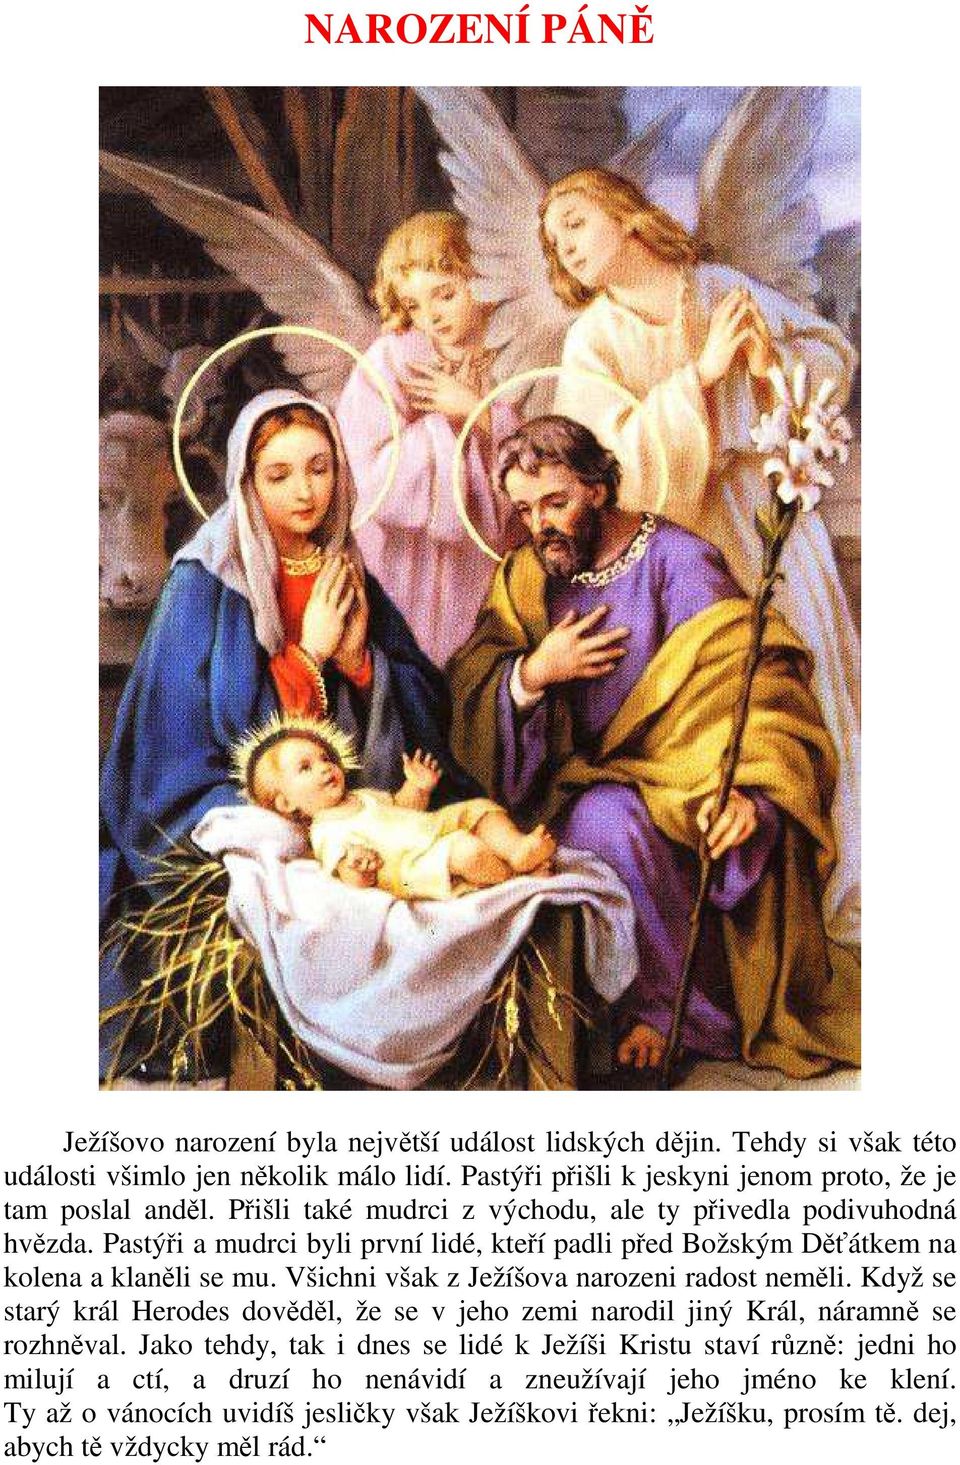 Pastýři a mudrci byli první lidé, kteří padli před Božským Děťátkem na kolena a klaněli se mu. Všichni však z Ježíšova narozeni radost neměli.